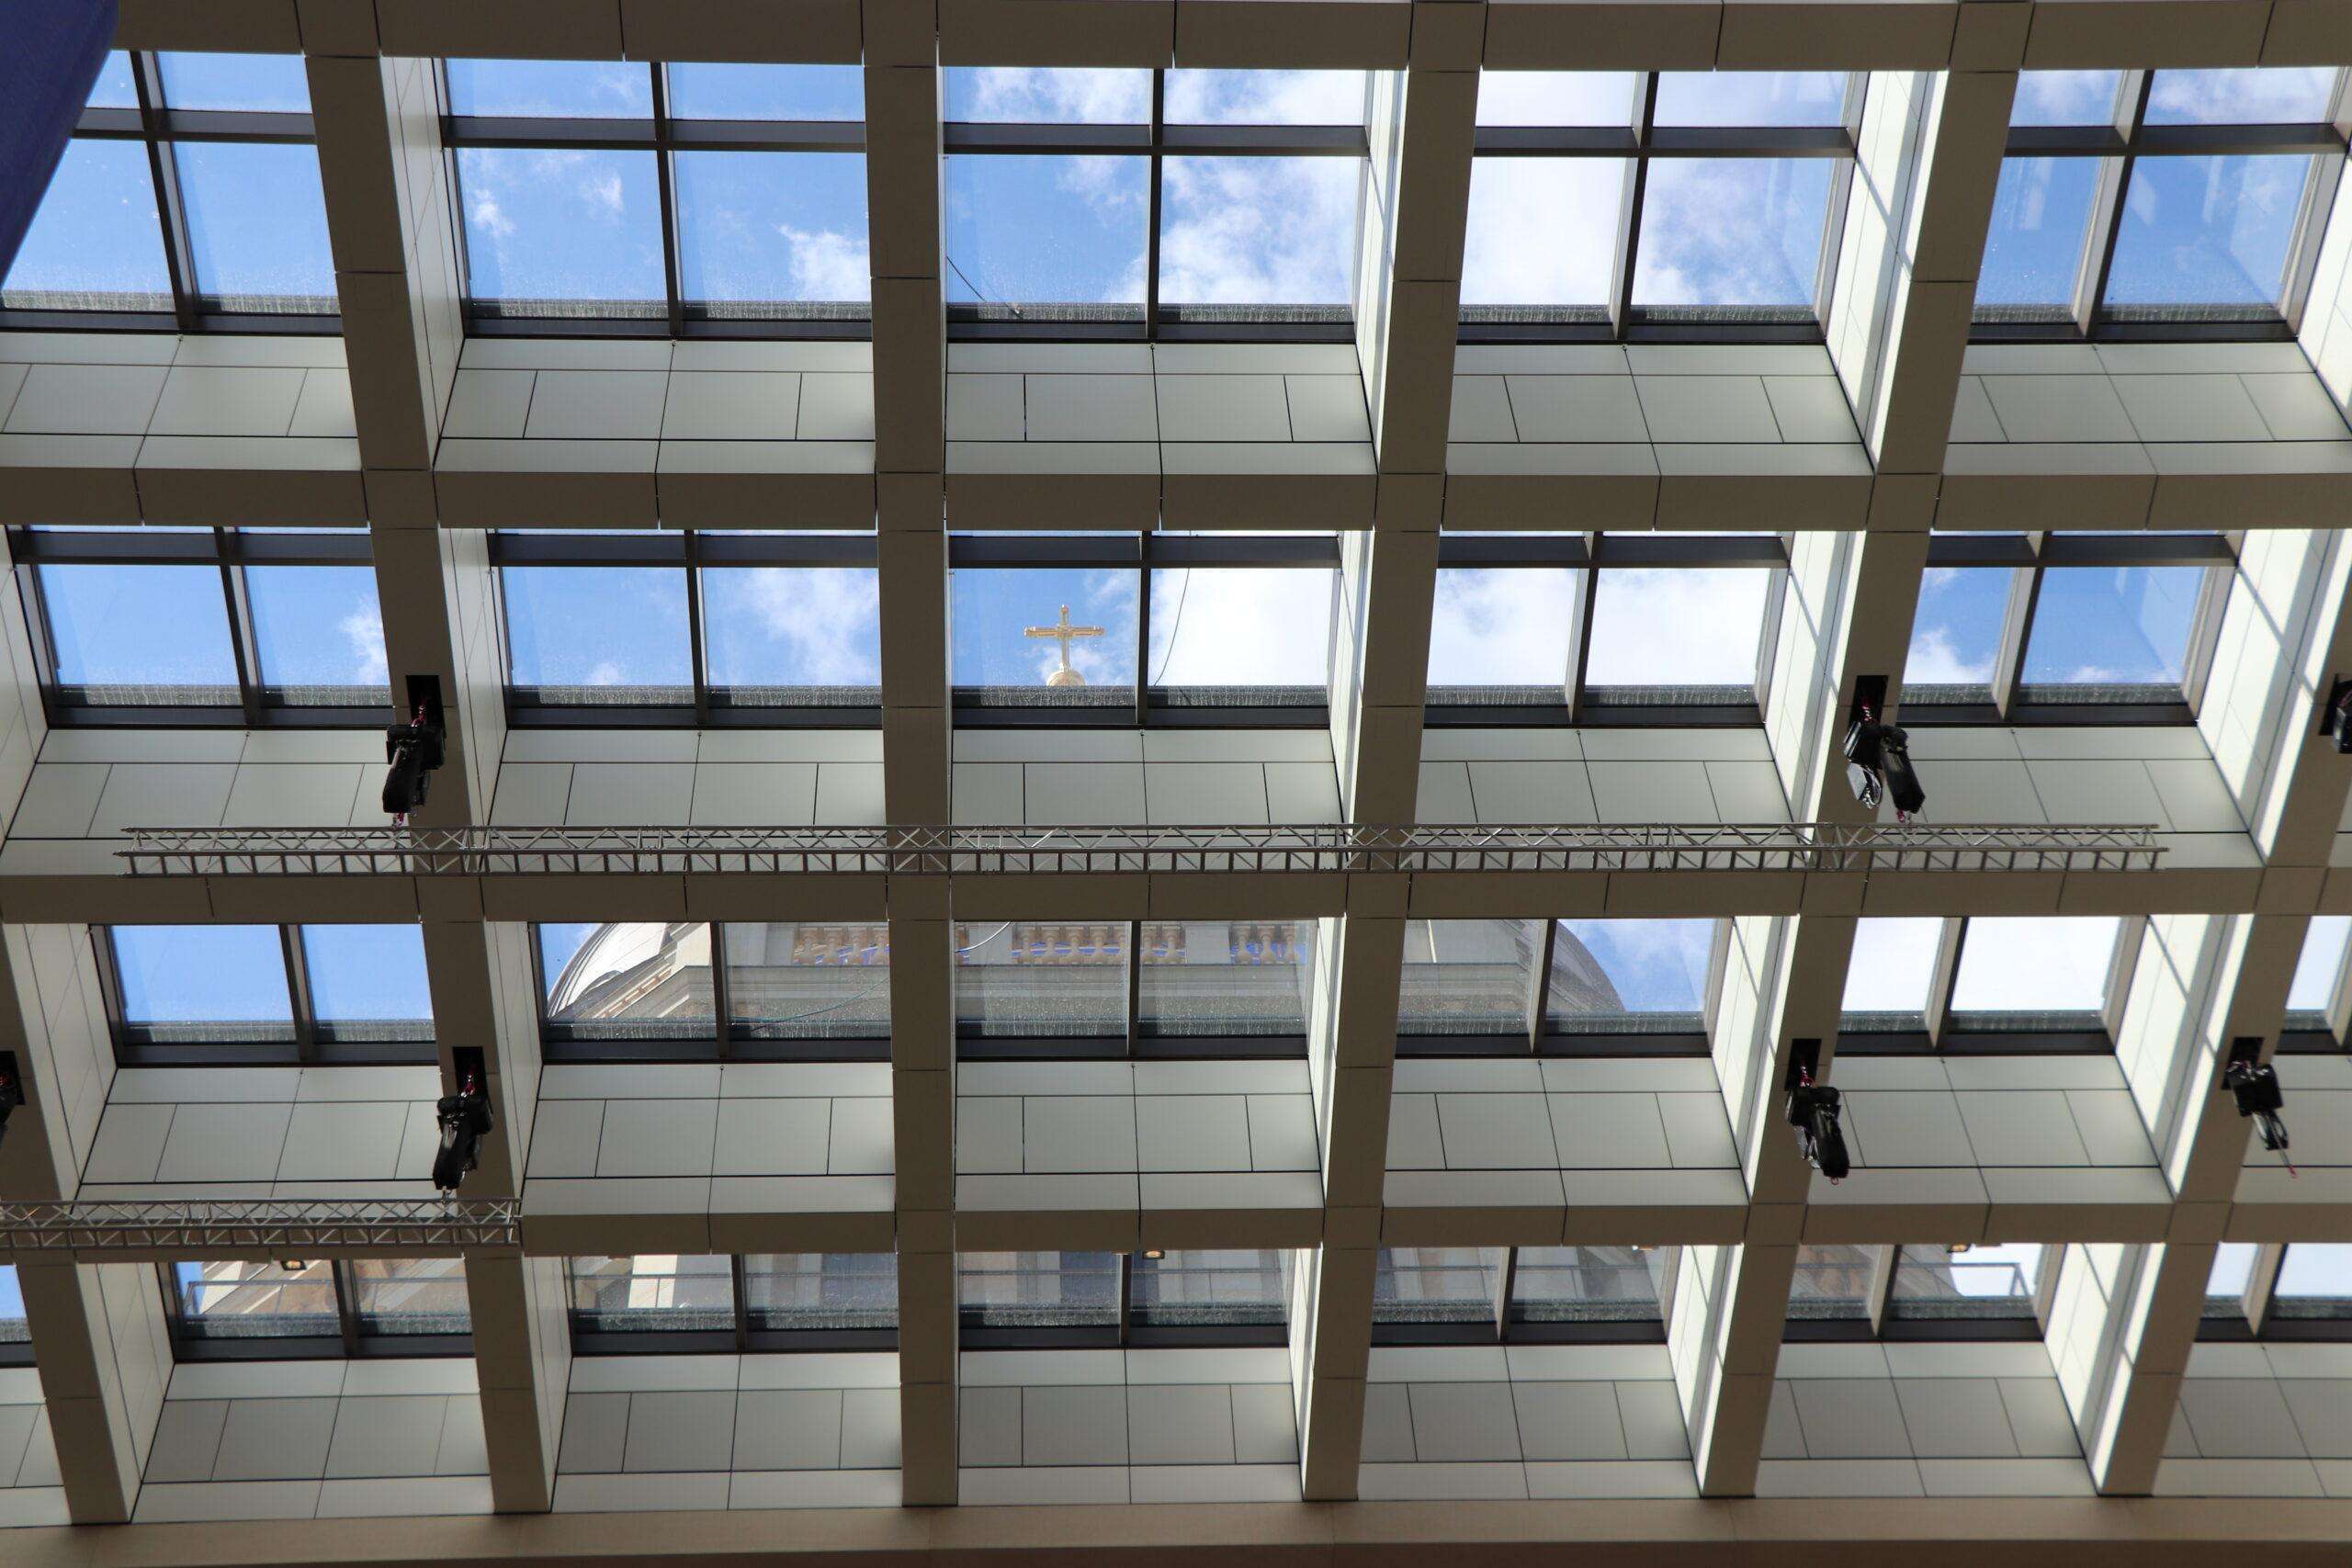 Blickvon unten durch die Deckenkonstruktion im Humboldt Forum; durch die Glasscheiben ist die Kuppel des Gebäudes zu sehen